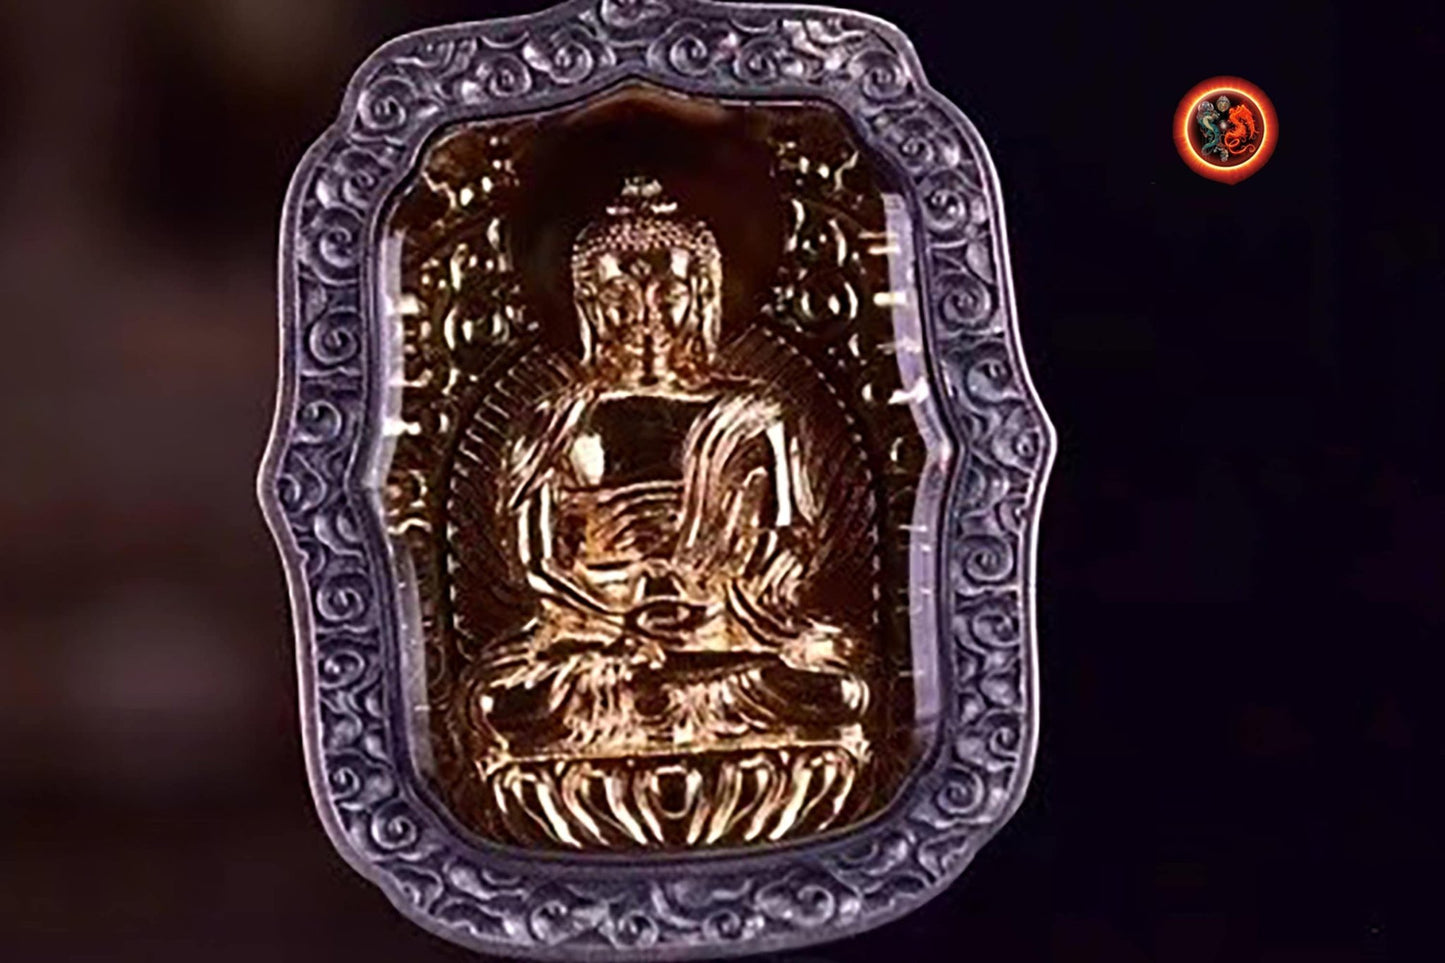 pendentif amulette de protection bouddhiste Bouddha Sakyamuni mala de prière et méditation 108 perles, argent 925 or 18K bélière Garuda - obsidian dragon